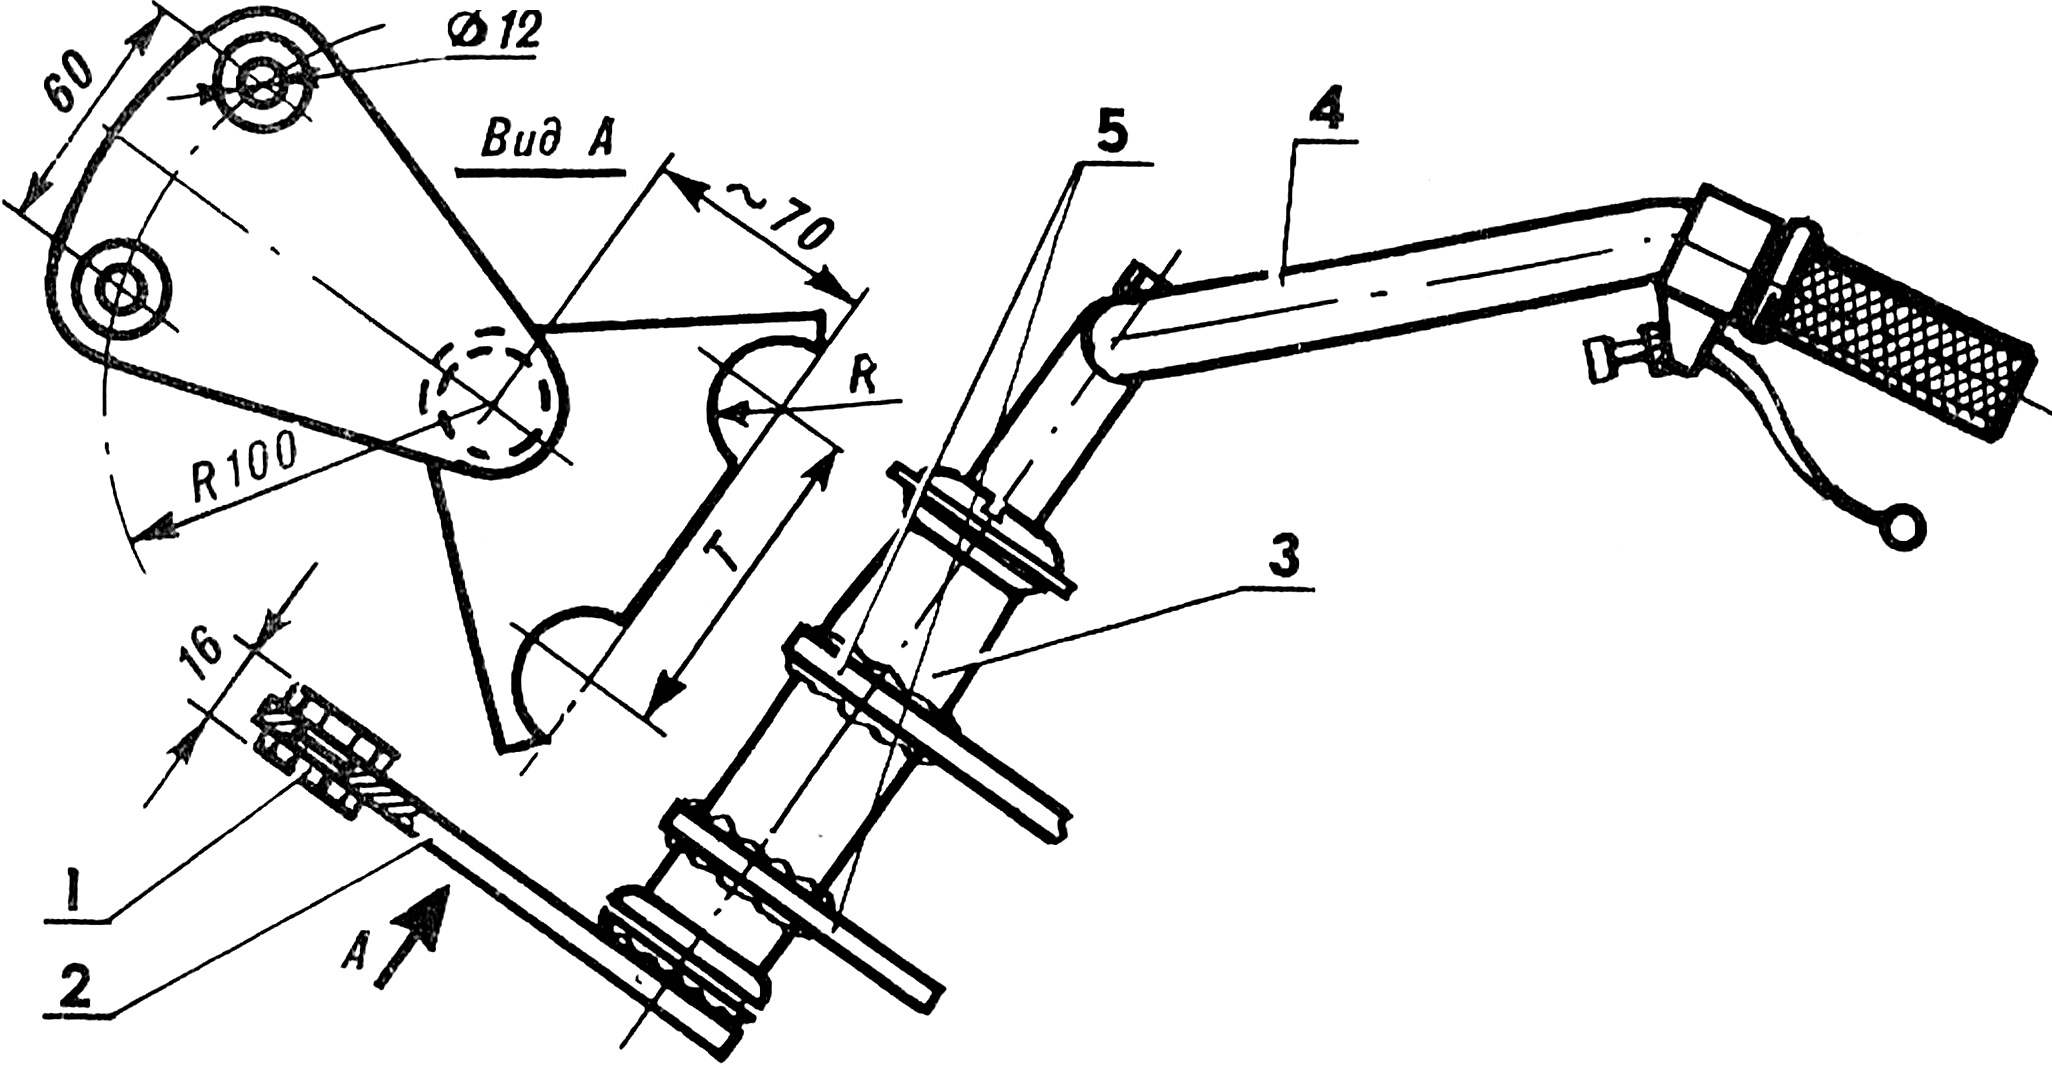 Fig. 2. Steering column.